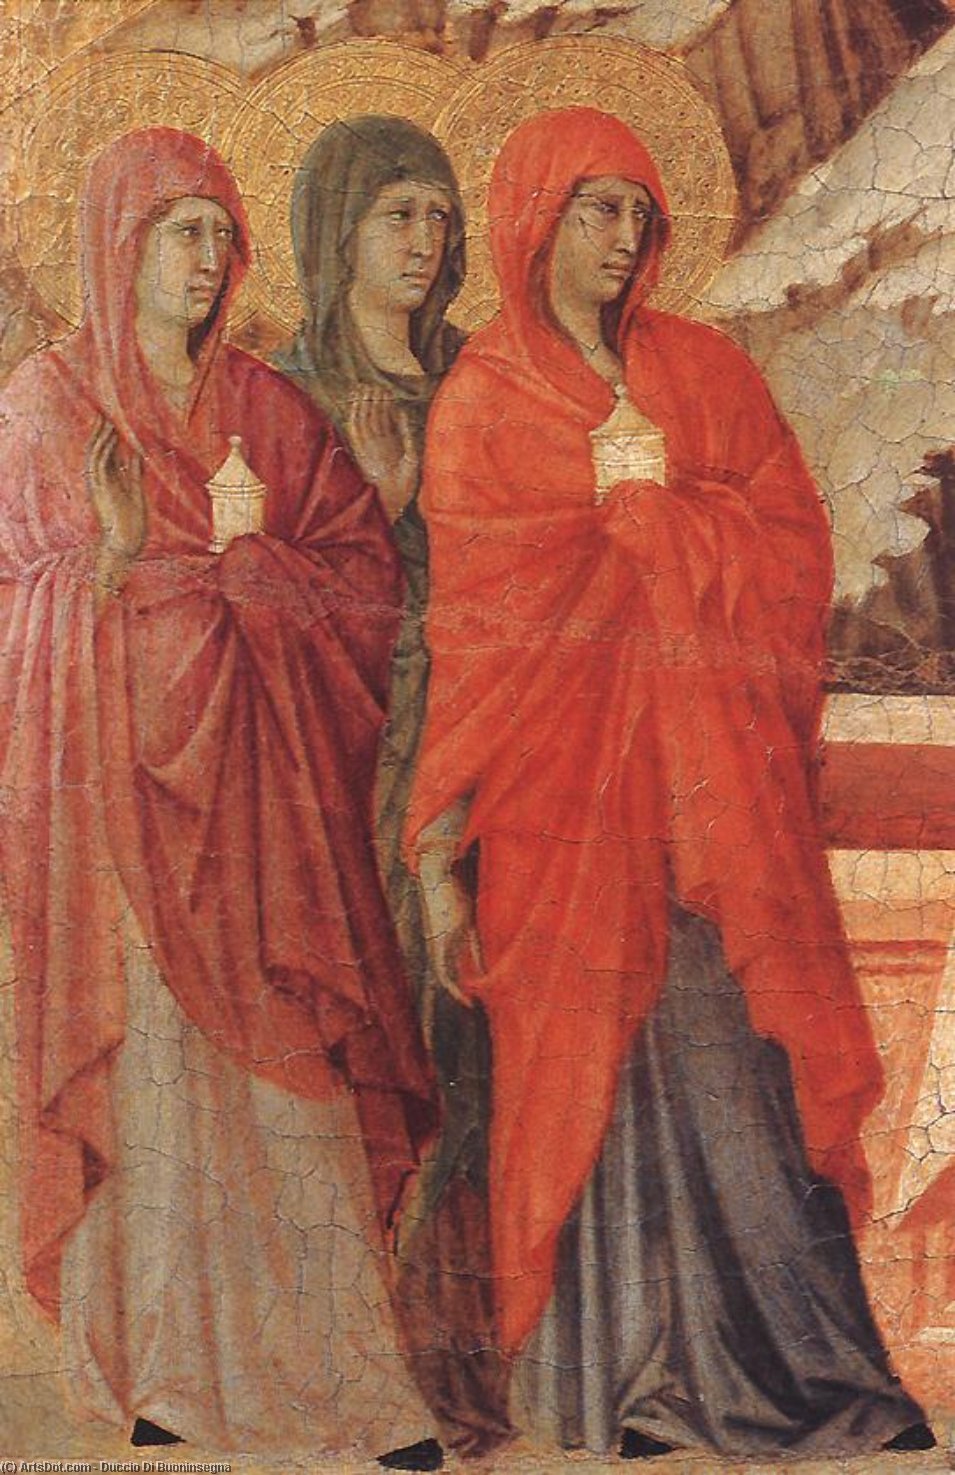 Wikioo.org - Bách khoa toàn thư về mỹ thuật - Vẽ tranh, Tác phẩm nghệ thuật Duccio Di Buoninsegna - The Three Marys at the Tomb (detail)